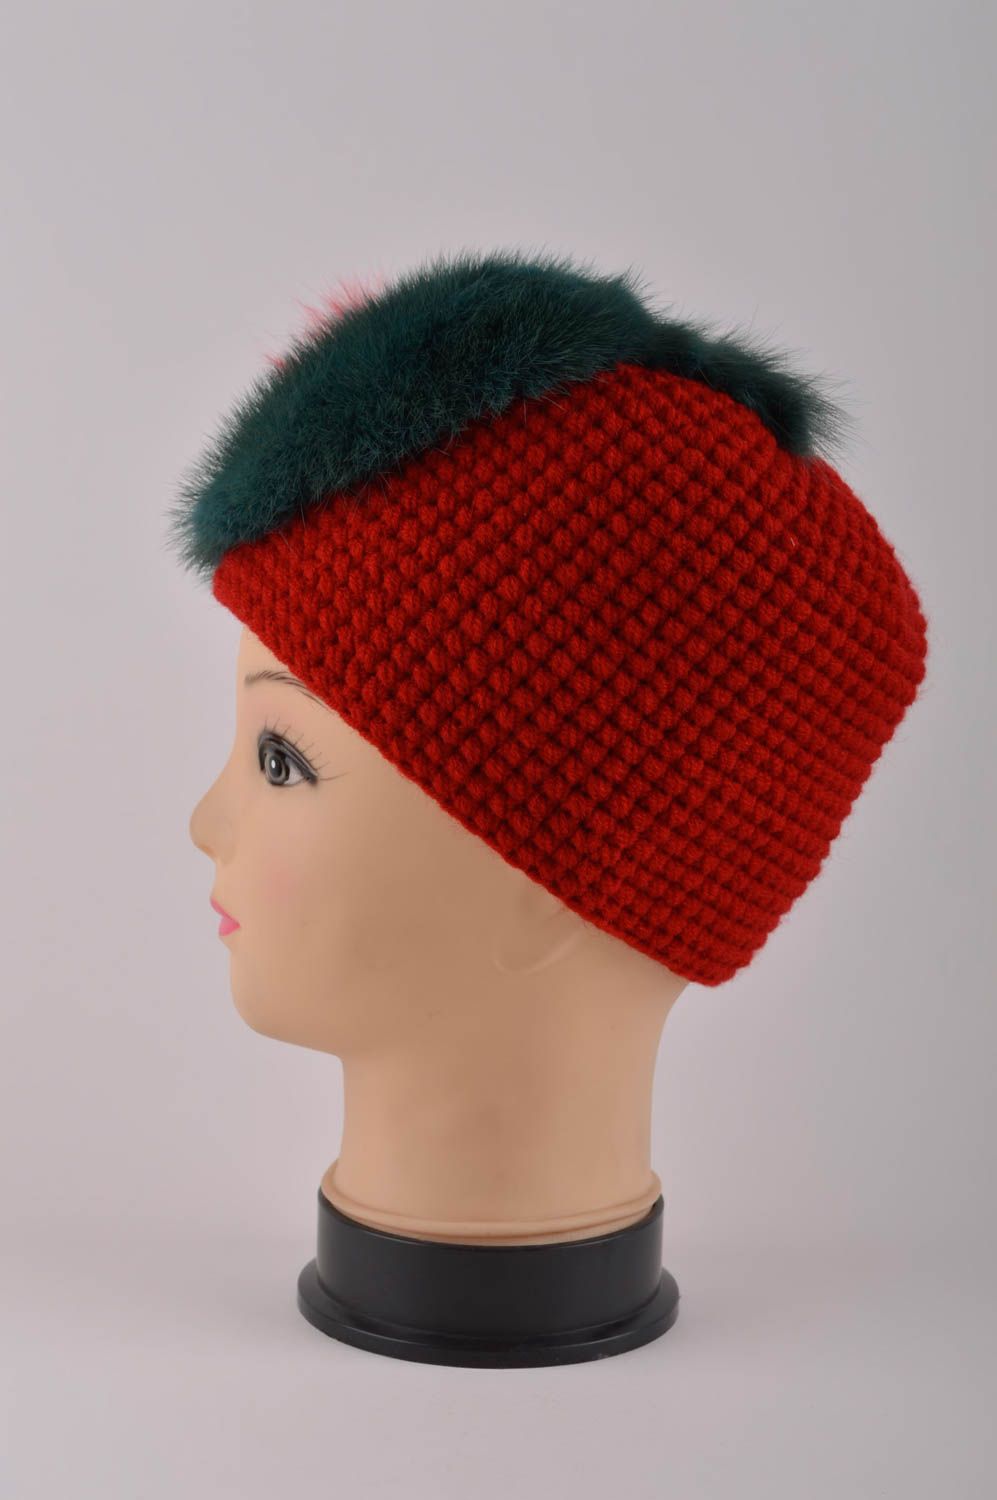 Handmade hat designer warm hat children hat woolen headwear gift ideas photo 4